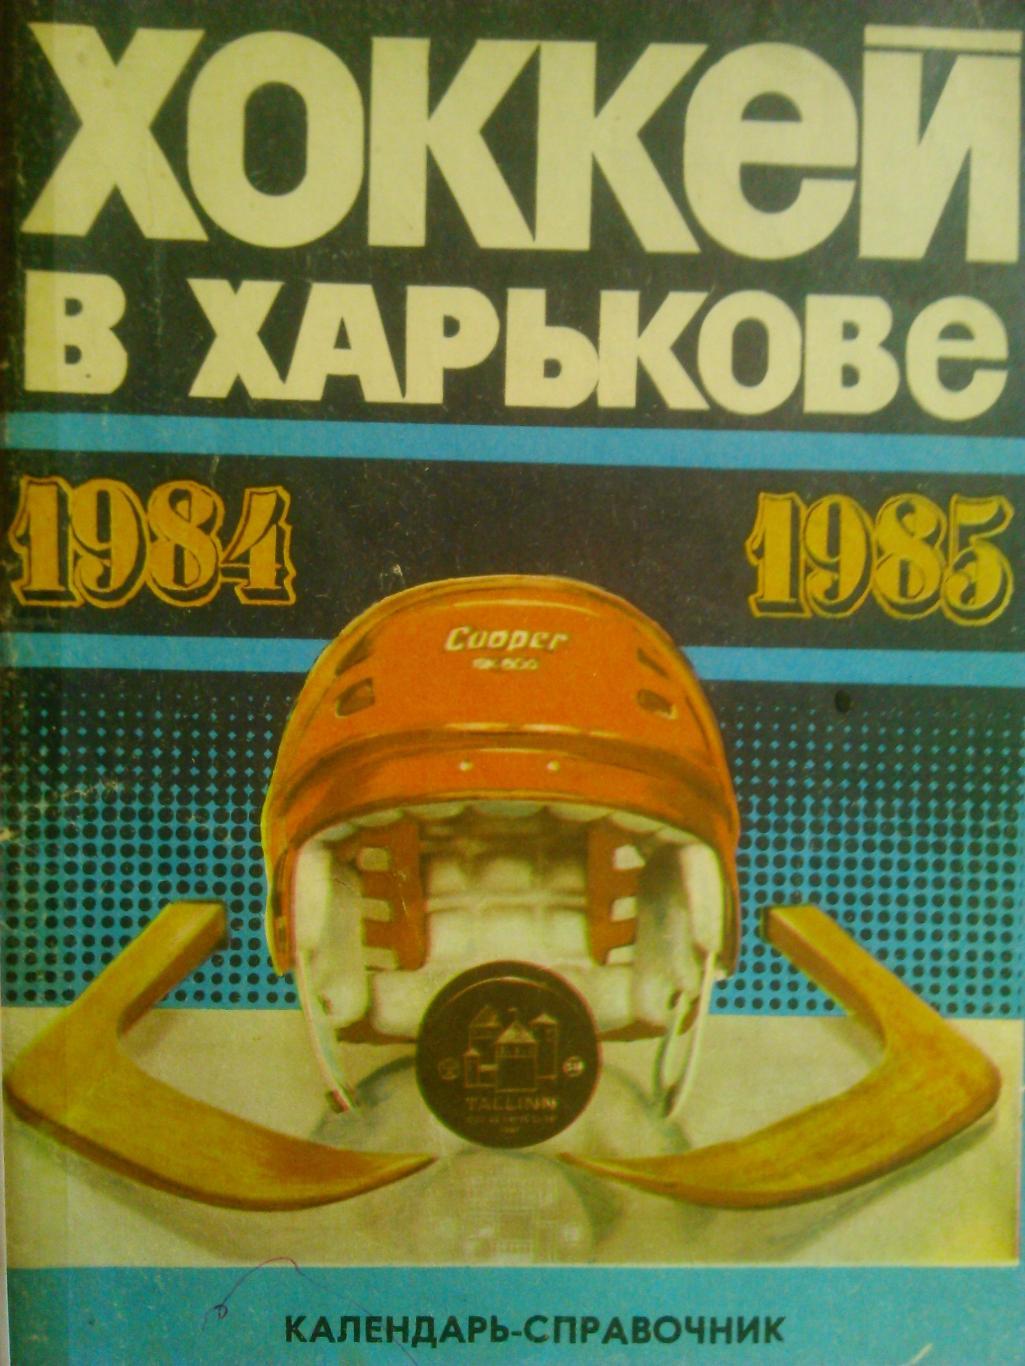 Хоккей в Харькове 1984-1985. Календарь-справочник